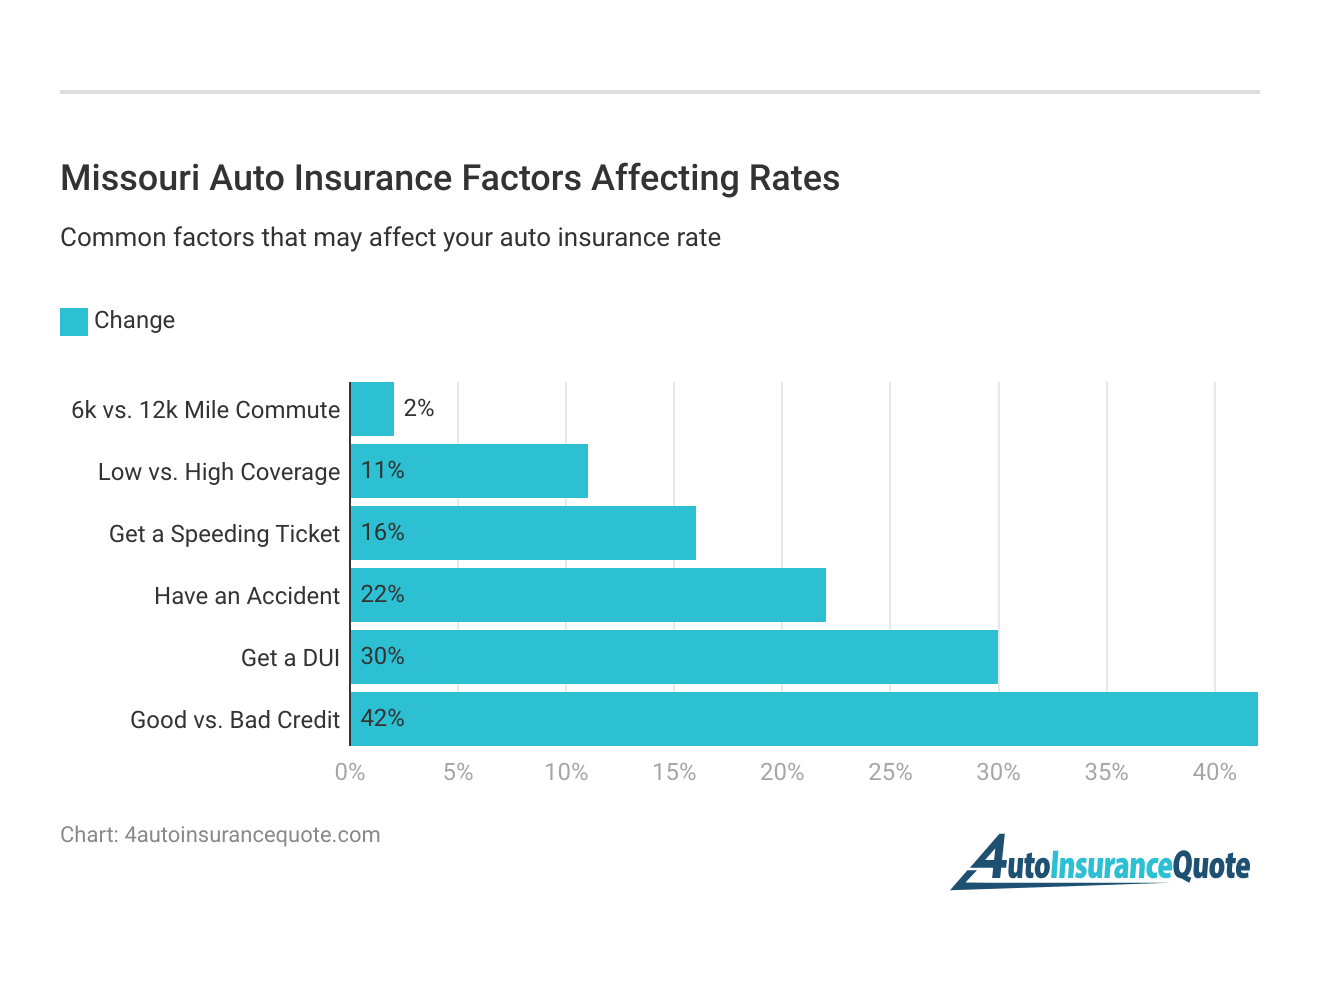 <h3>Missouri Auto Insurance Factors Affecting Rates</h3>